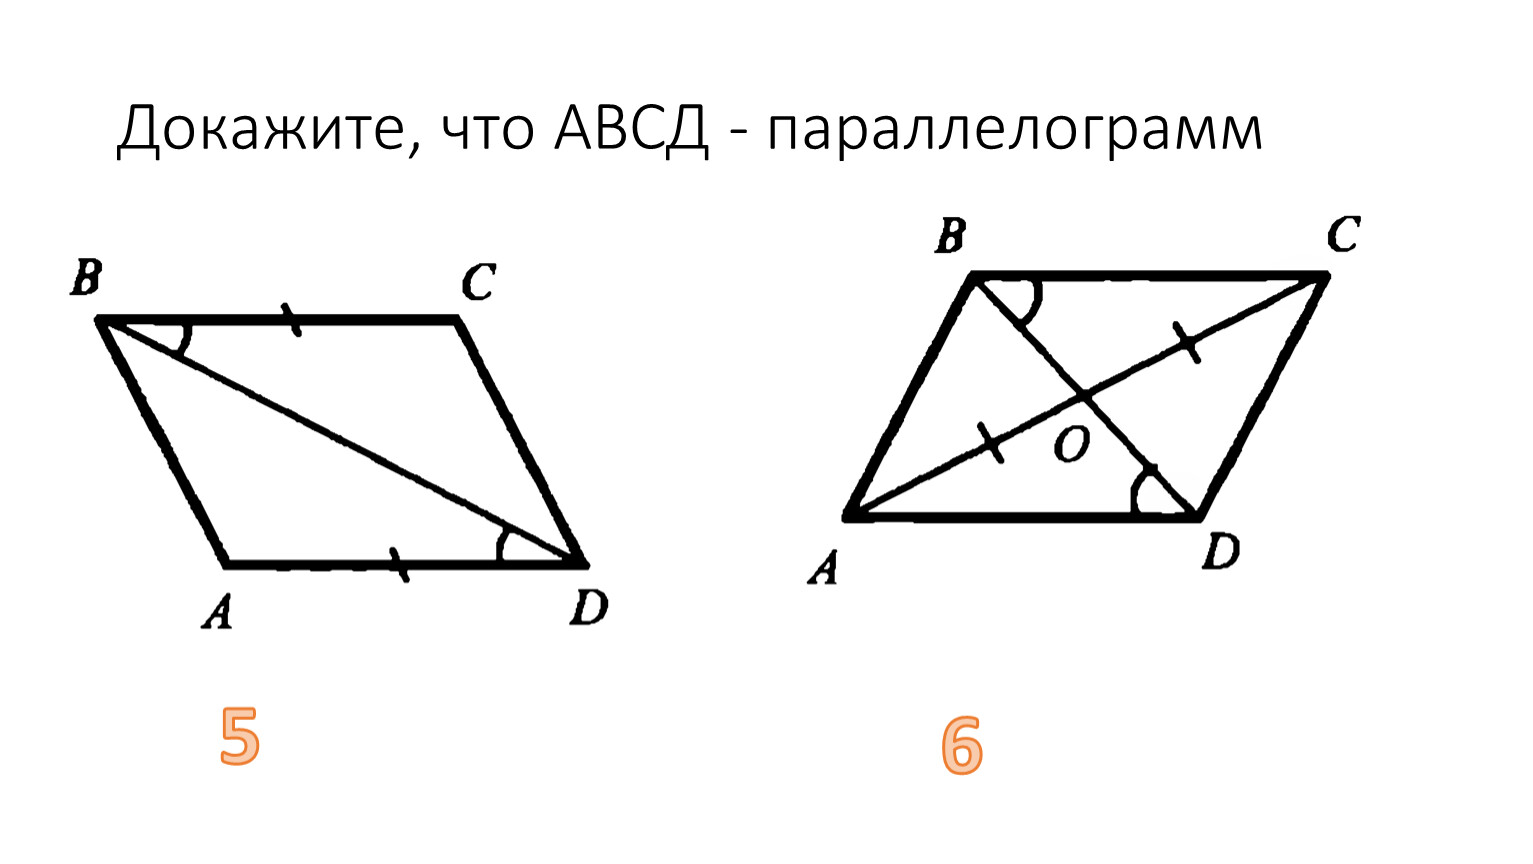 В параллелограмме авсд ав сд. Равенство углов в четырехугольнике. Параллелограмм АВСД. Доказать что АВСД параллелограмм. Что такое параллелограмм в геометрии.